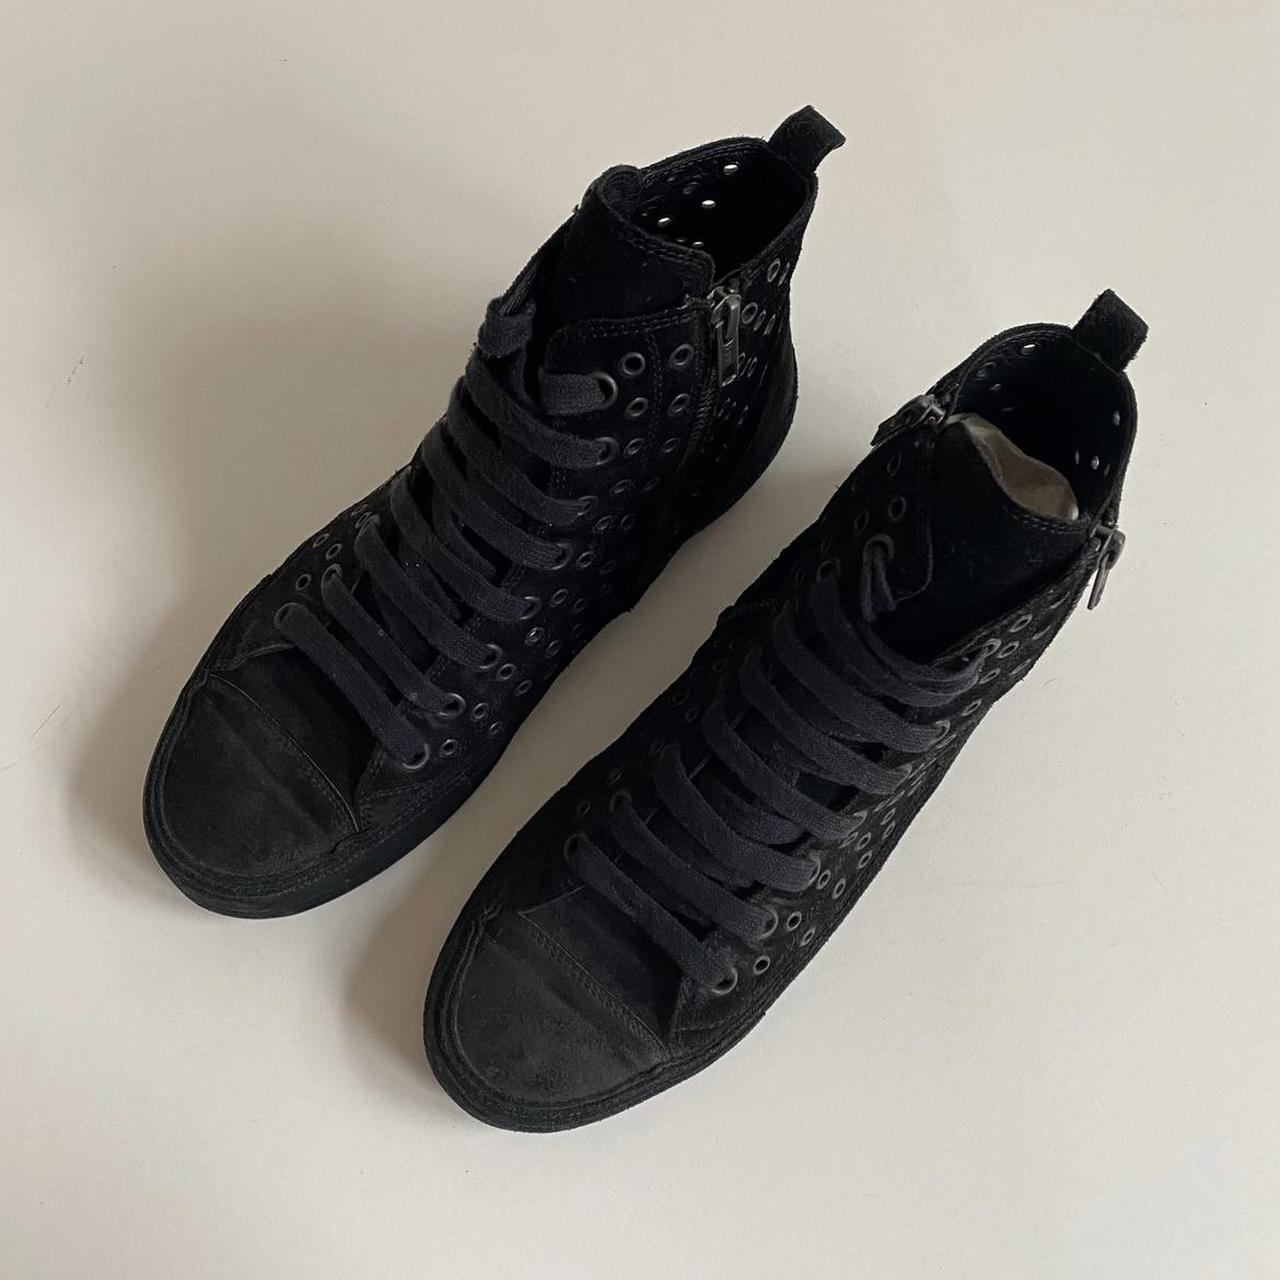 Ann Demeulemeester Men's Black Footwear | Depop